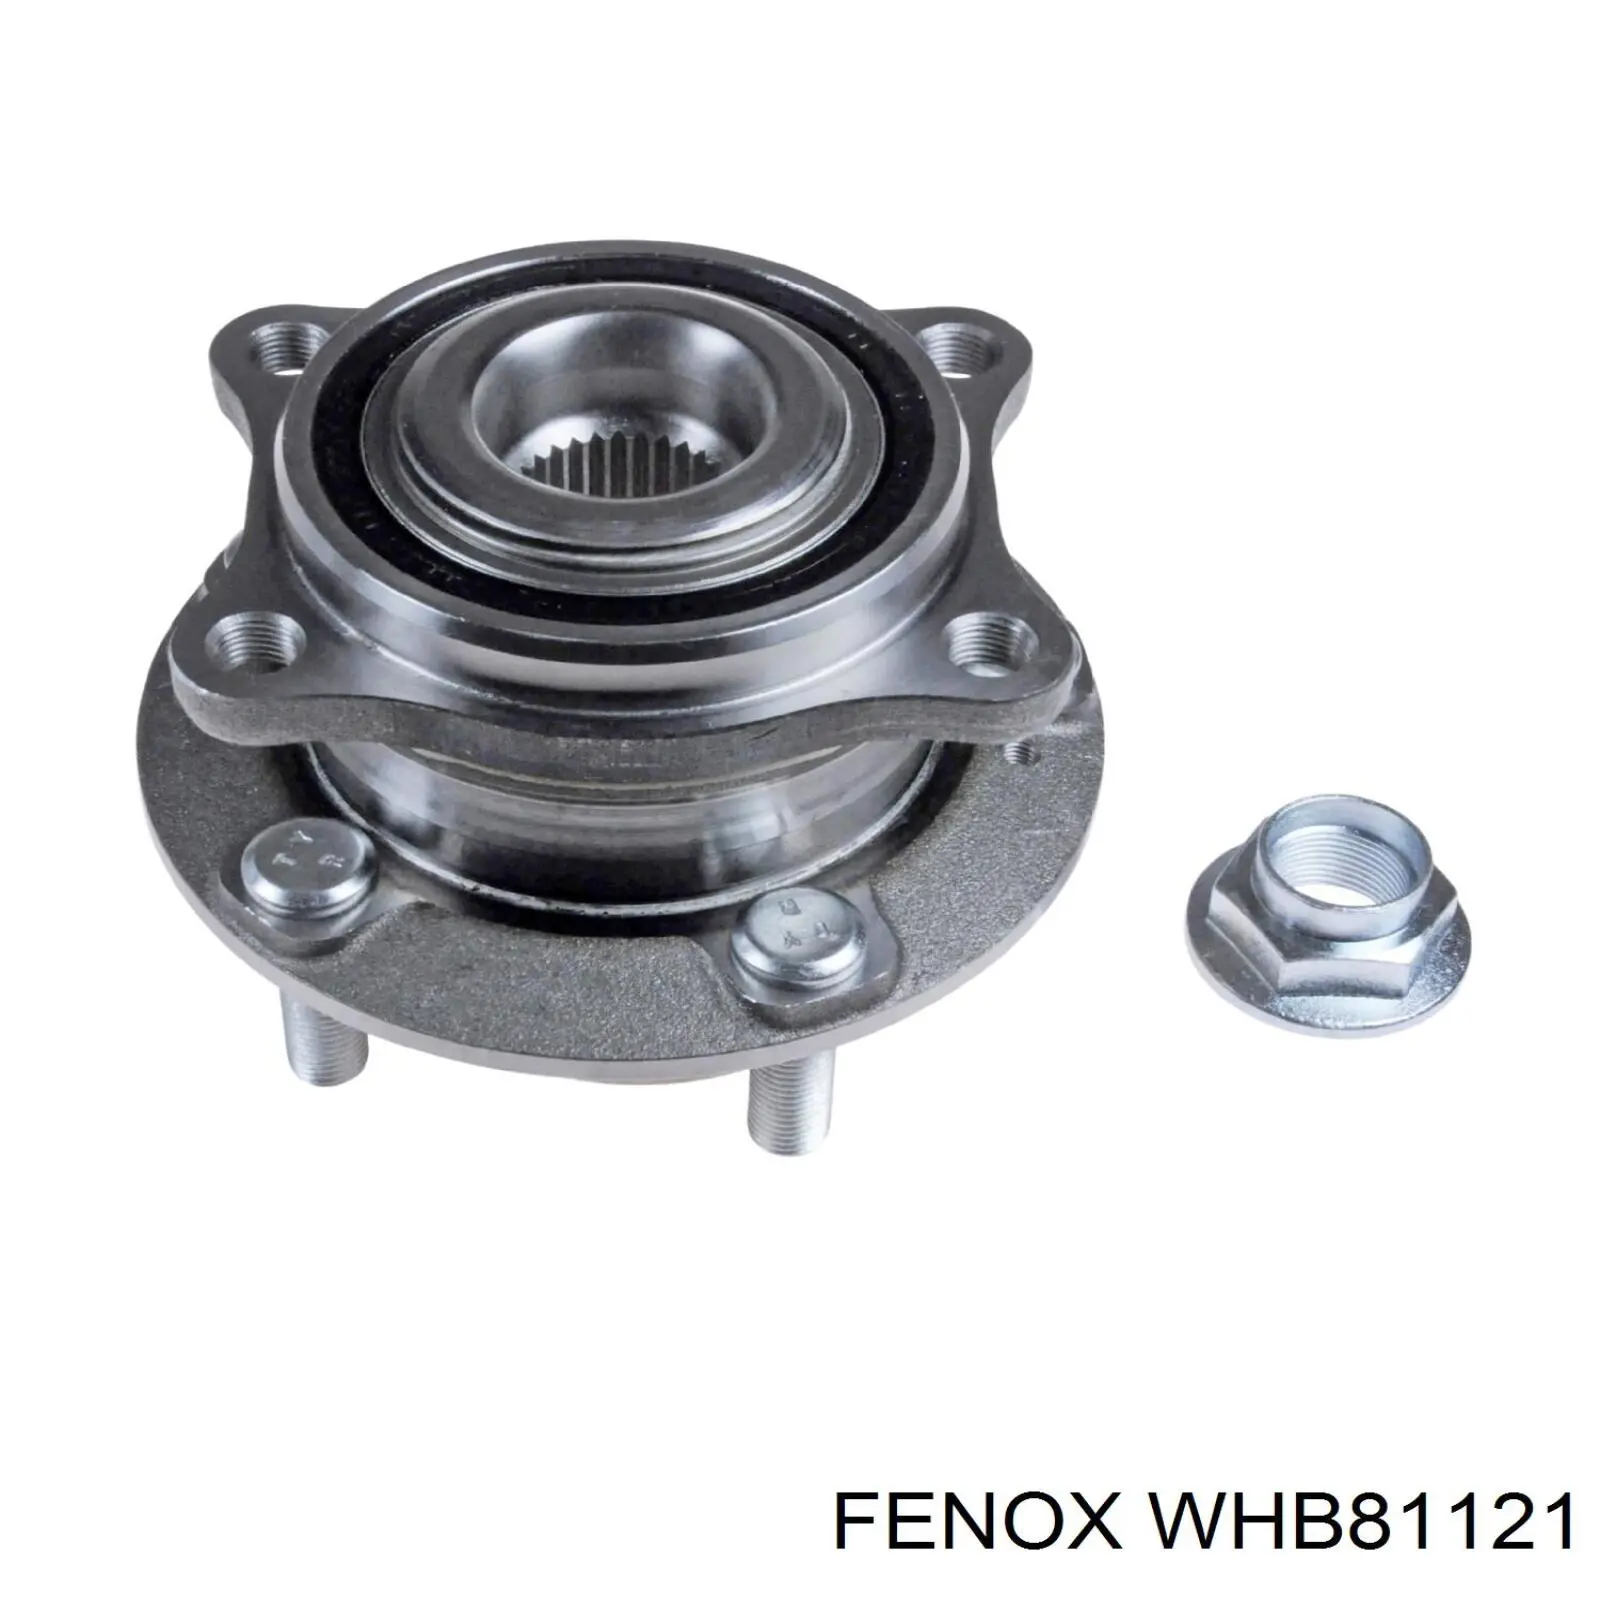 WHB81121 Fenox ступица передняя